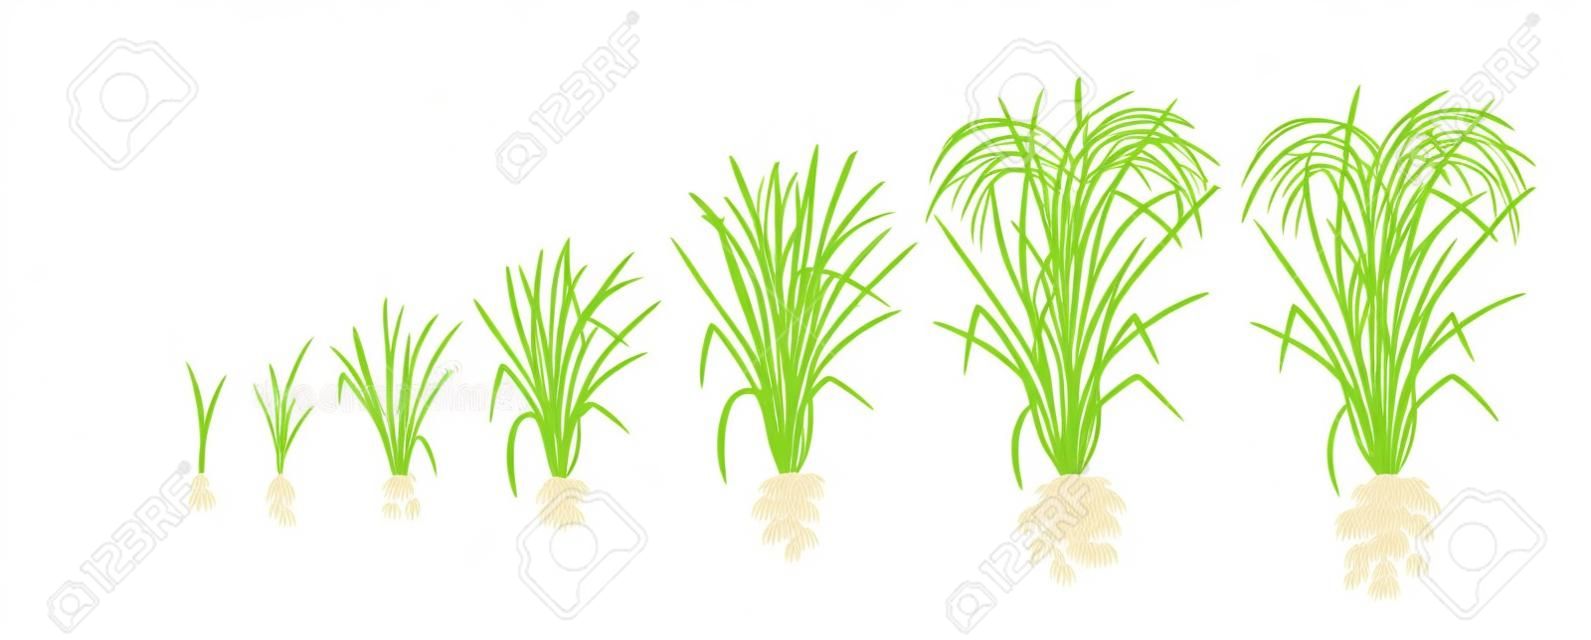 Etapy wzrostu rośliny ryżu. Fazy wzrostu ryżu. Ilustracja wektorowa. Oryza sativa. Okres dojrzewania. Cykl życia. Używaj nawozów. Na białym tle. Jest to towar rolny z trzecią co do wielkości produkcją na świecie.